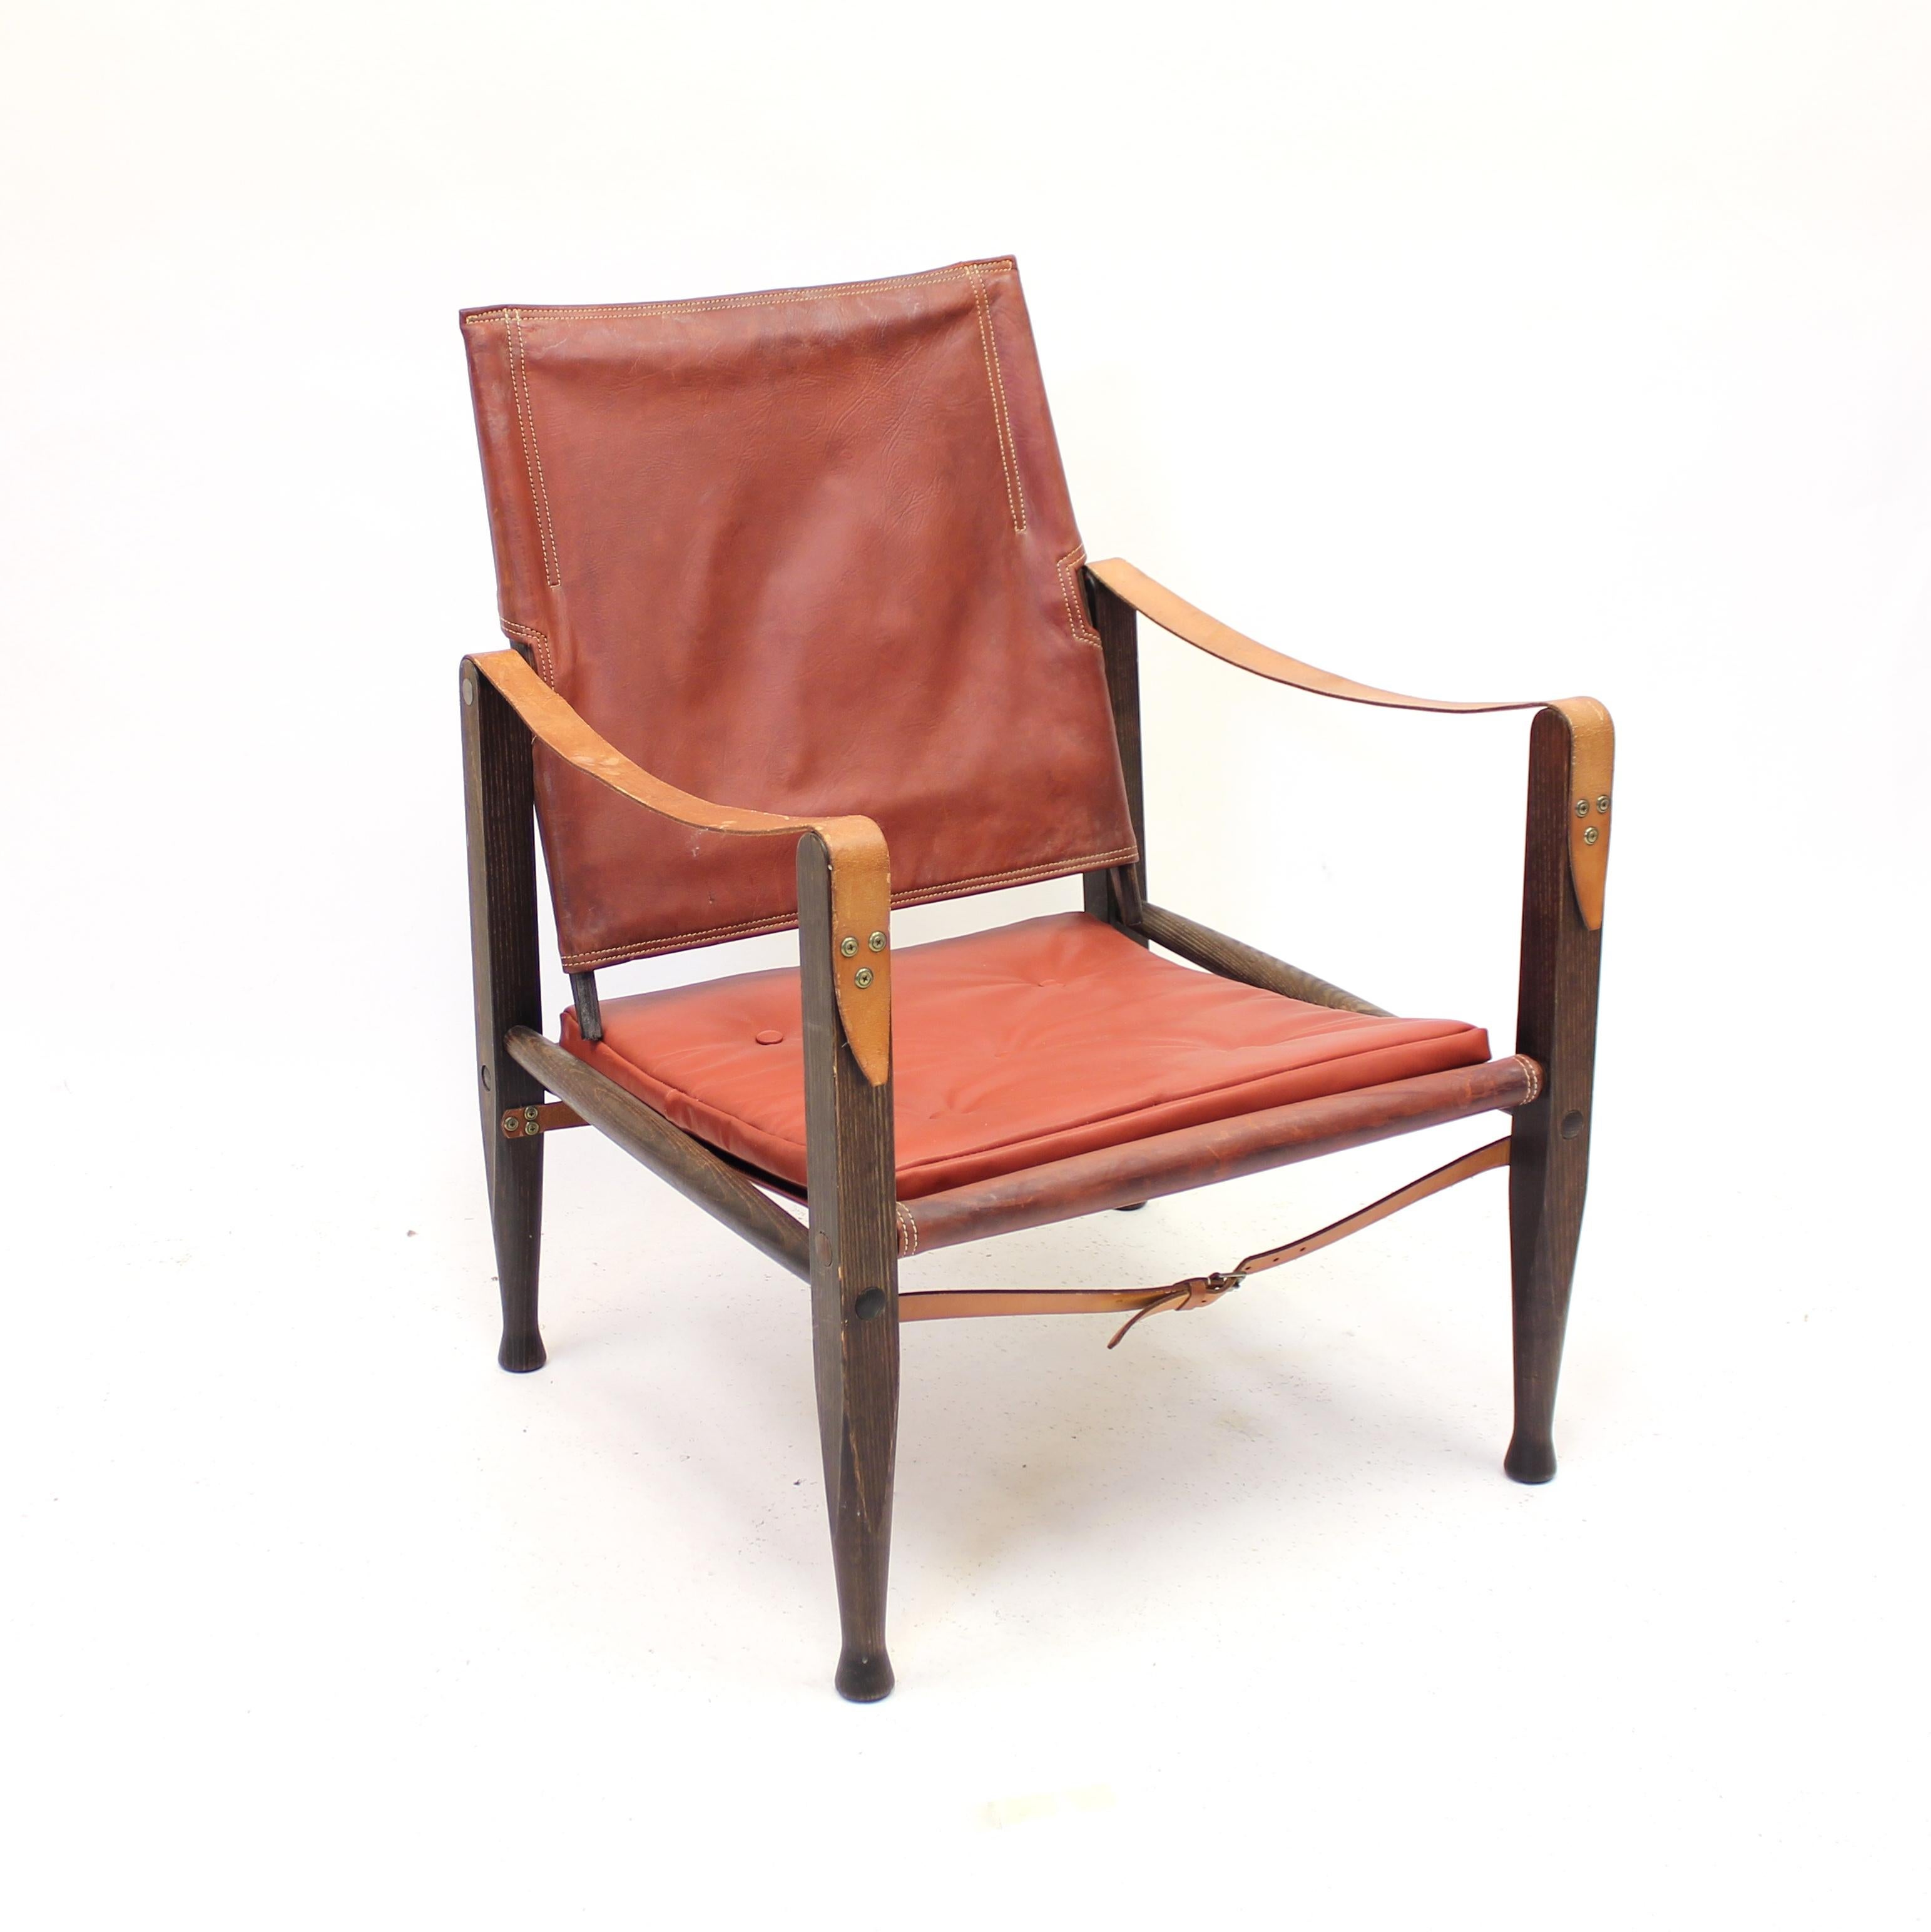 La légendaire chaise safari en cuir couleur cognac sur un cadre en chêne très foncé, conçue par le grand-père du design danois, Kaare Klint, en 1933 pour son collaborateur de longue date Rud Rasmussen. Cet exemple a vraisemblablement été produit au